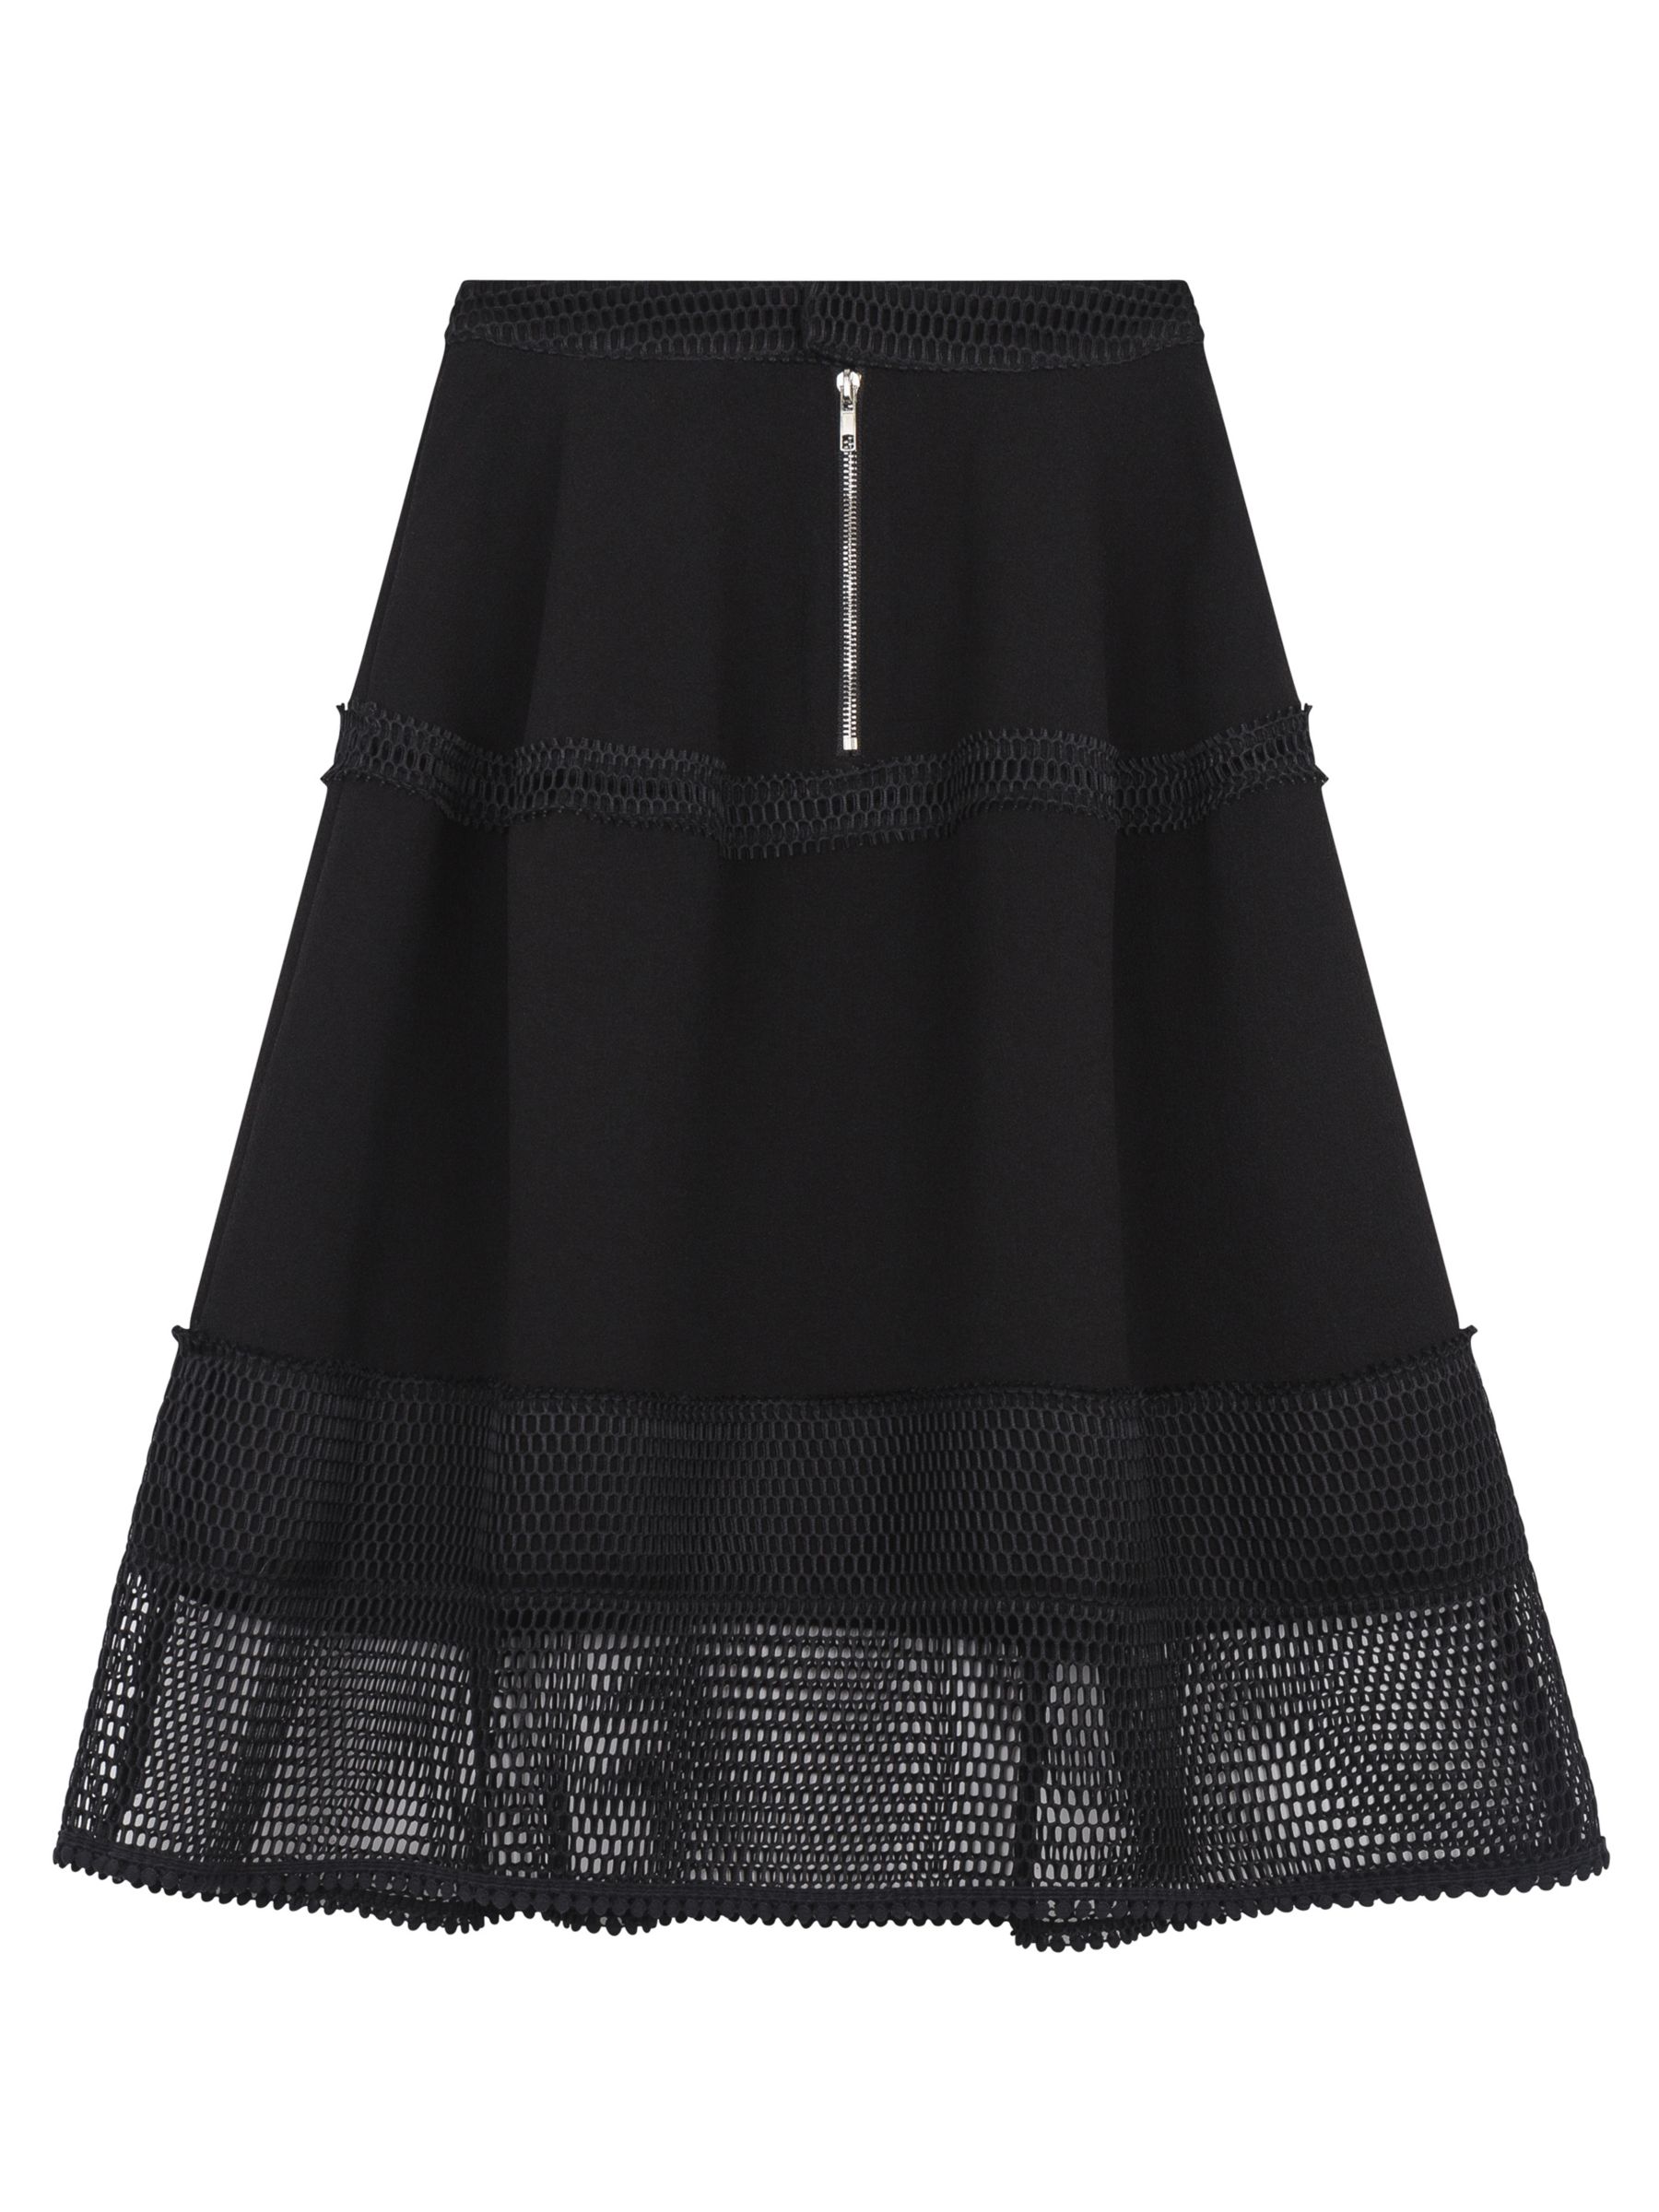 Gerard Darel Tucson Skirt, Black